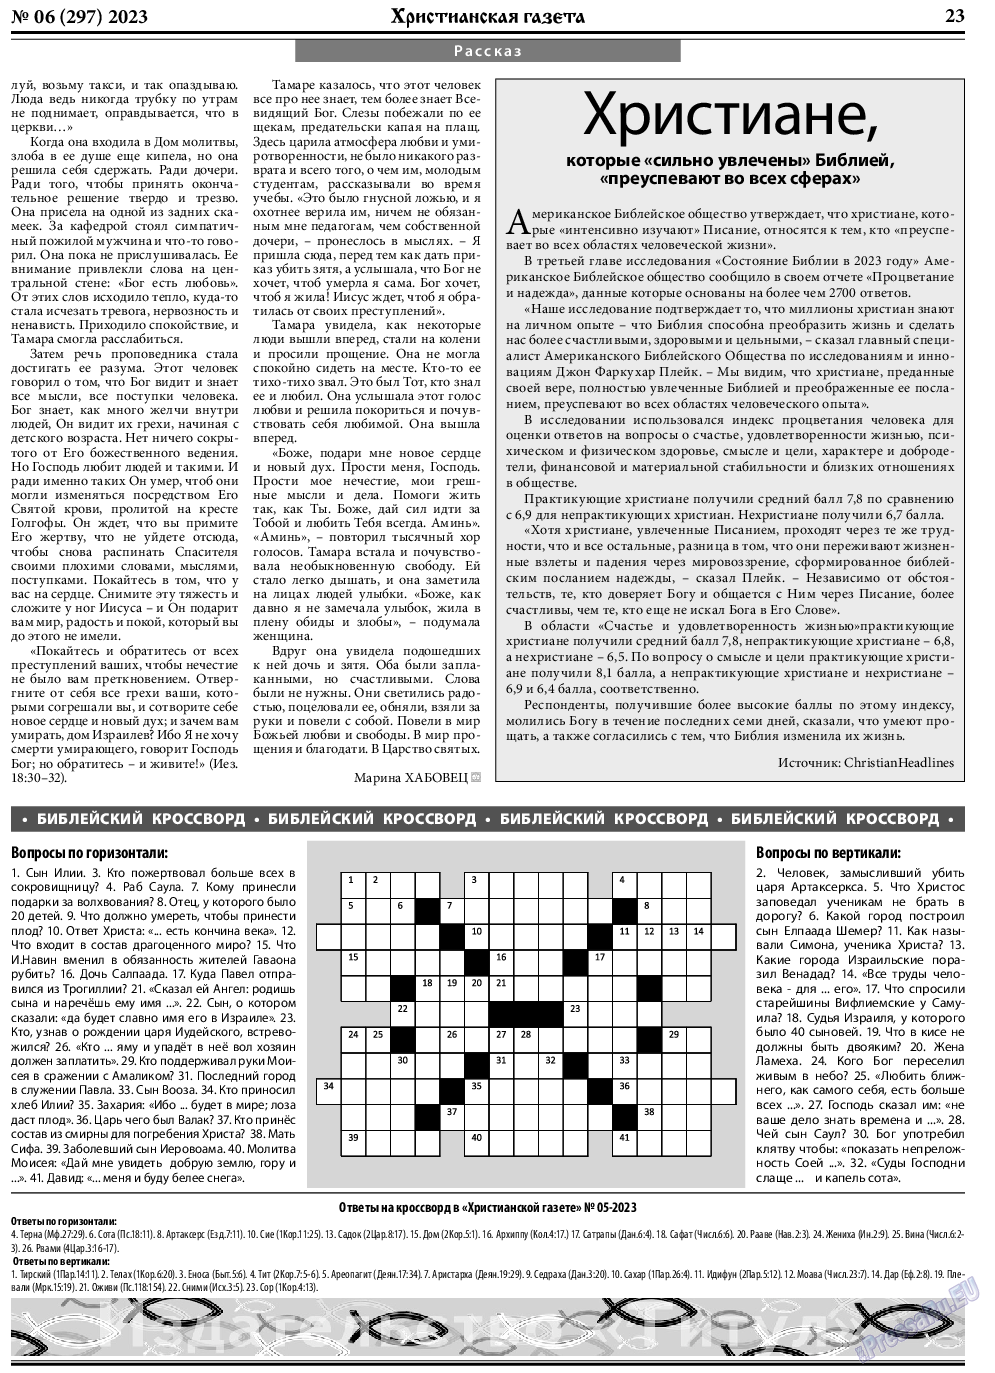 Христианская газета, газета. 2023 №6 стр.23